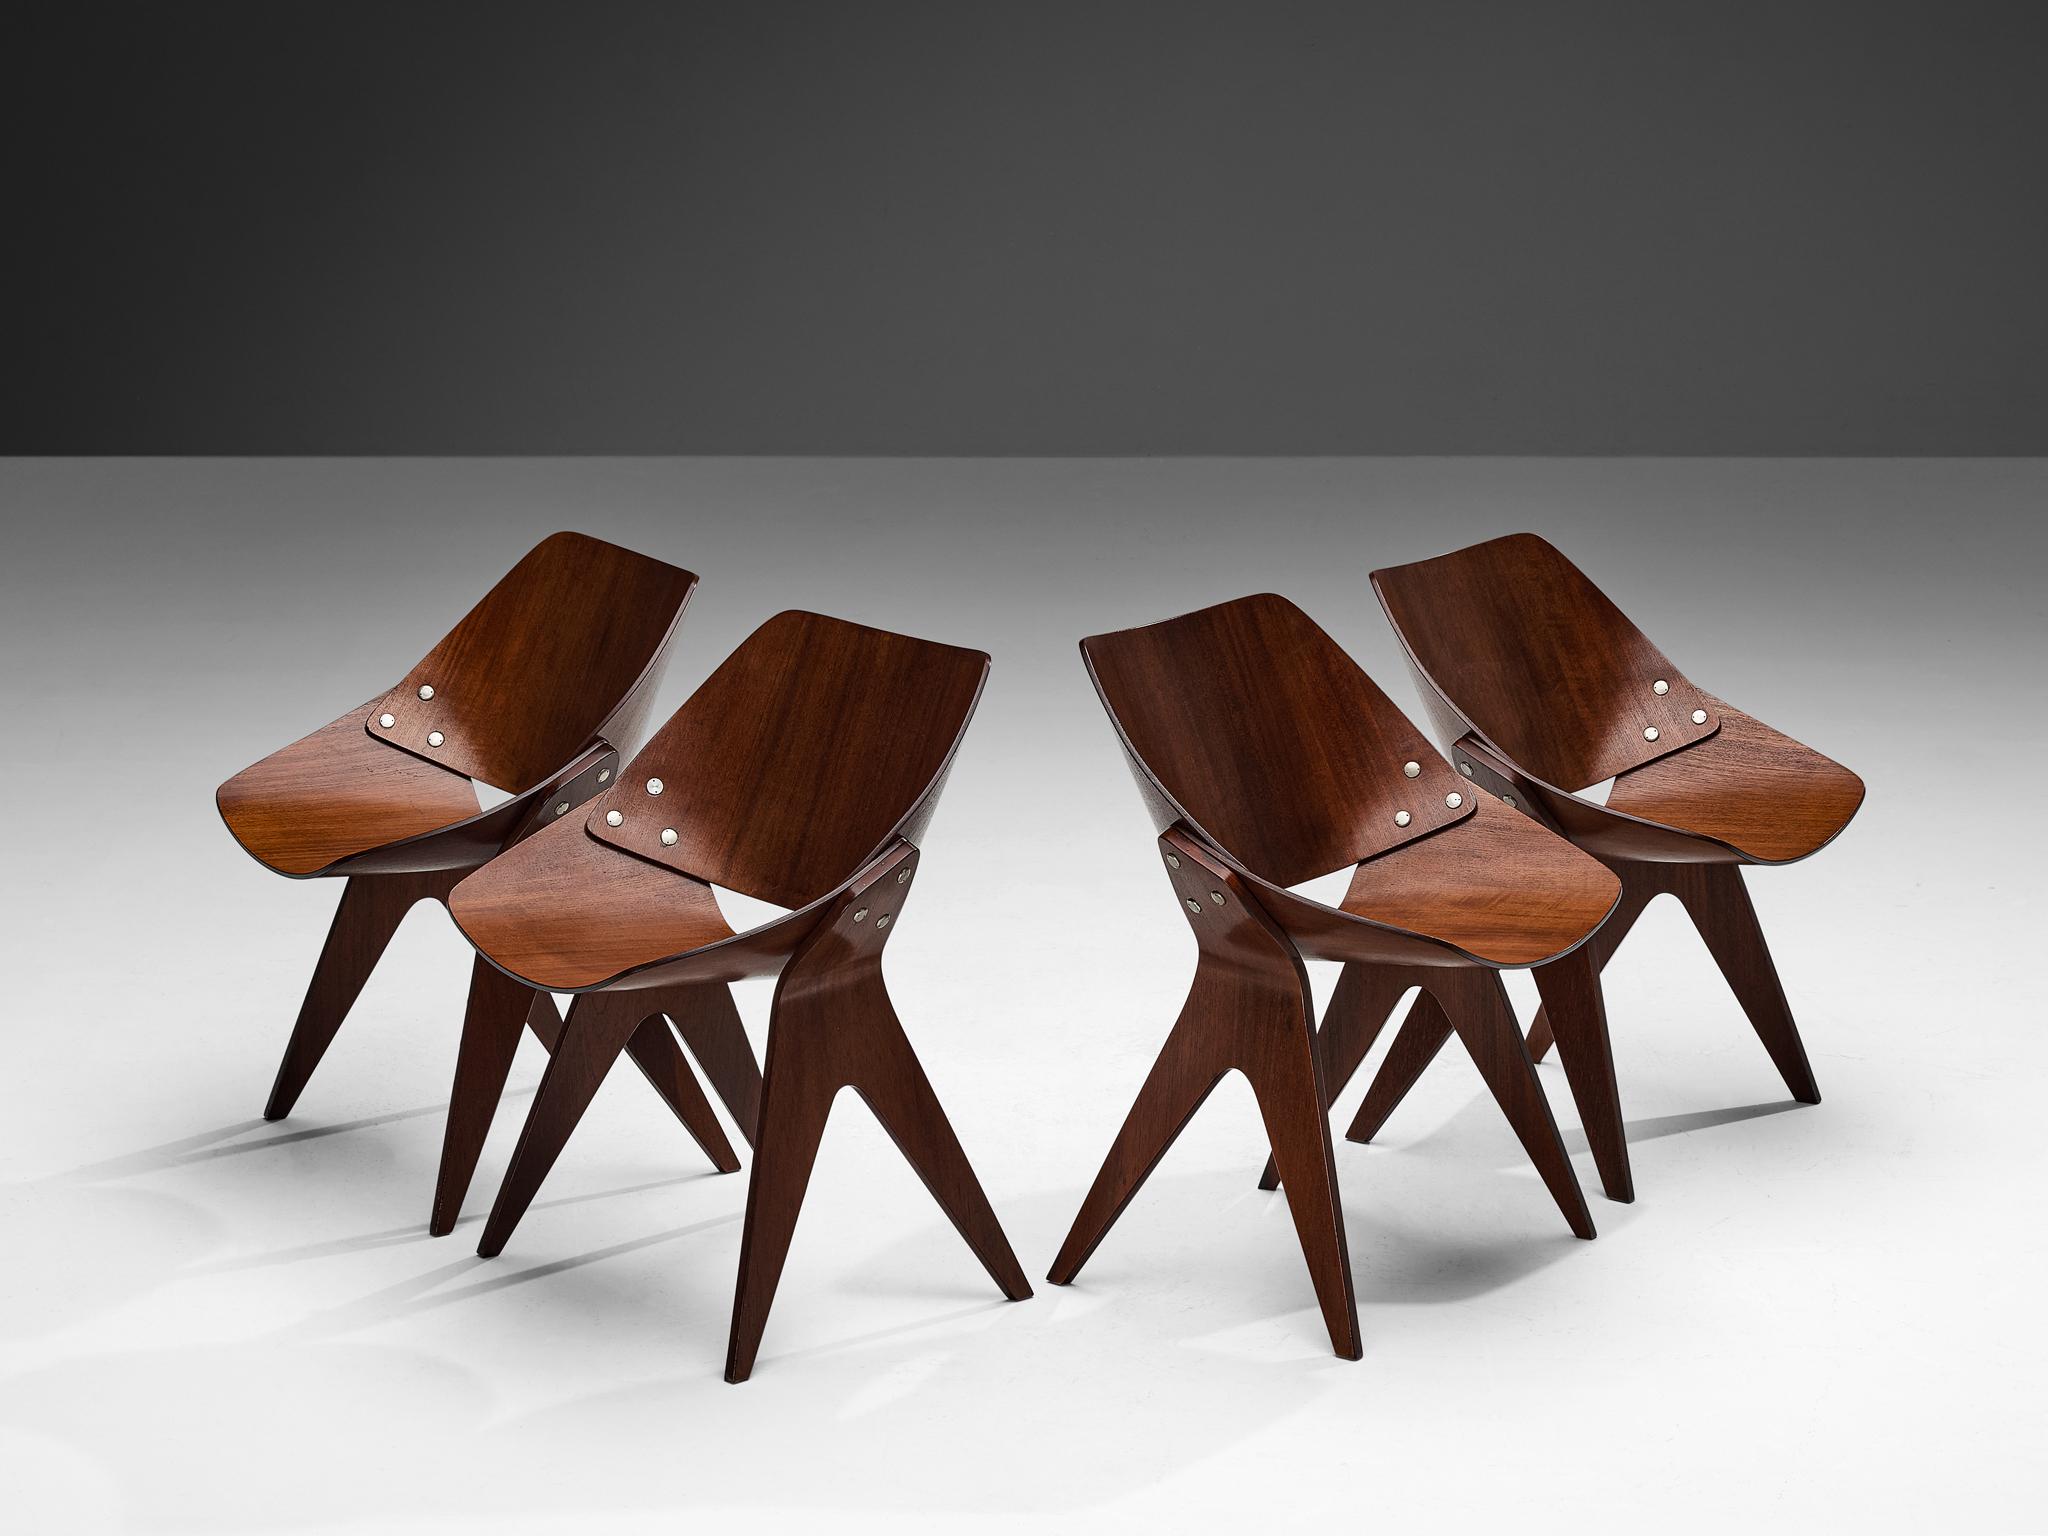 Gianni Moscatelli pour Formanova, ensemble de quatre chaises de salle à manger 'Bivalve 940', contreplaqué d'acajou, laiton nickelé, Varèse, Italie, vers 1959.

Fabriquées vers 1959, ces chaises de salle à manger Bivalve 940 ont été conçues par